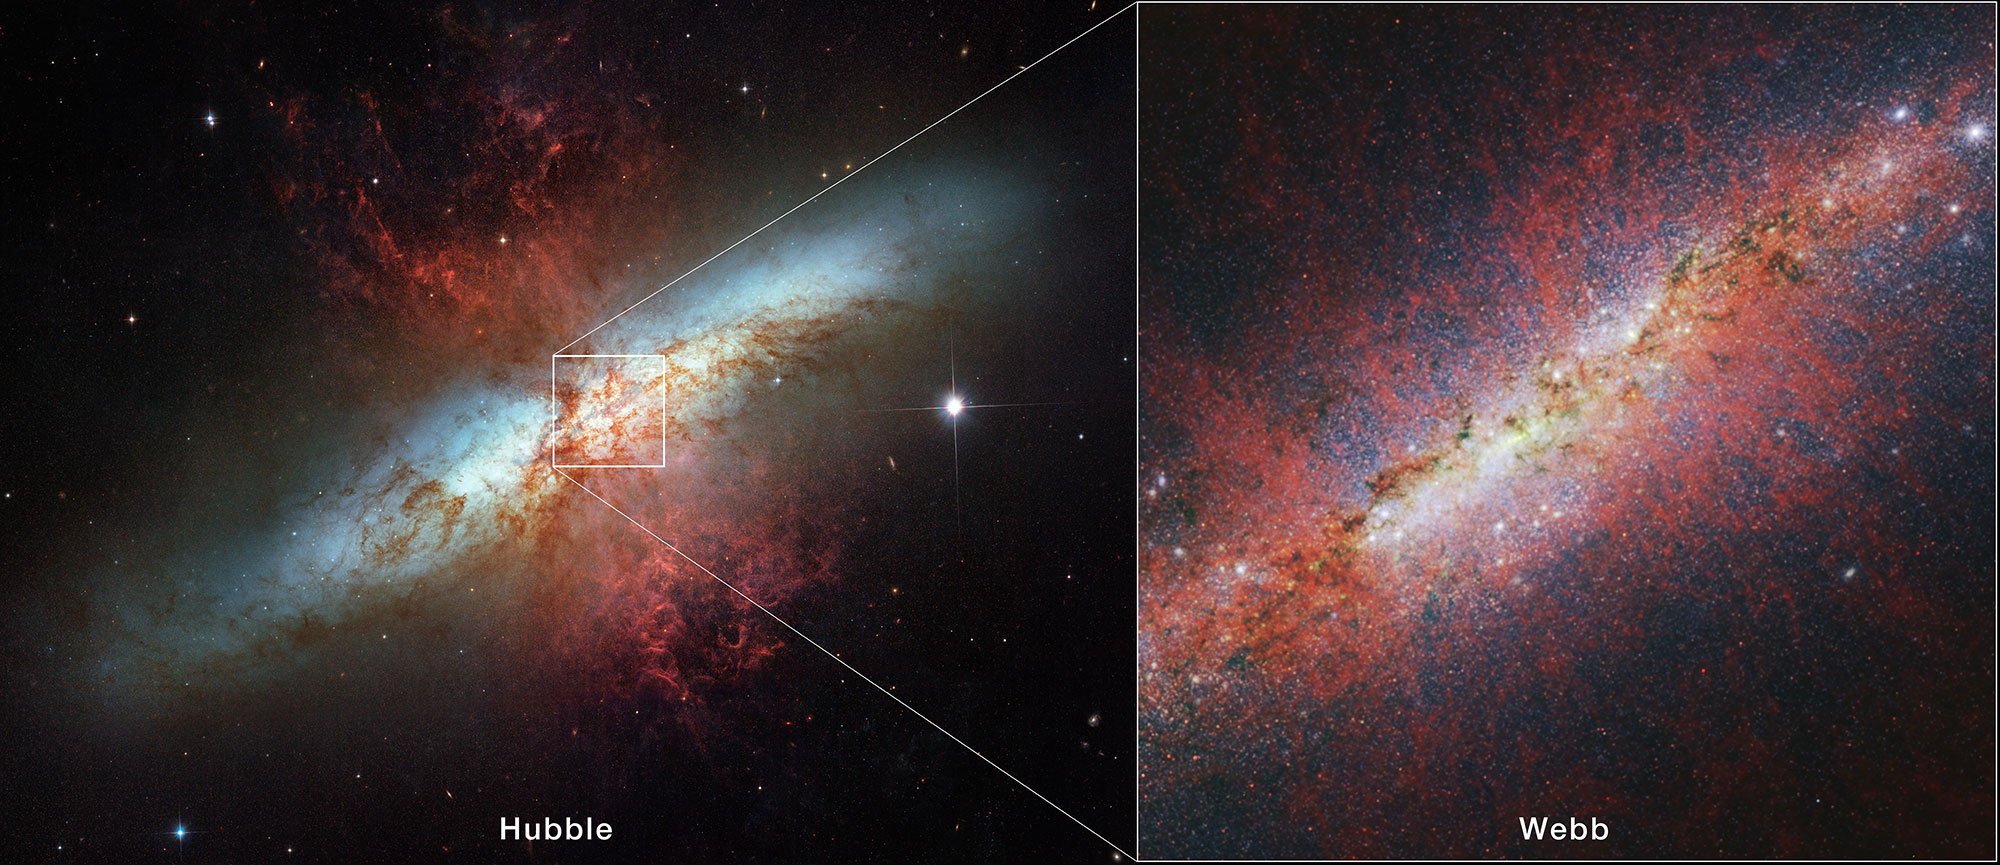 La Galaxia del Cigarro desde Hubble y Webb